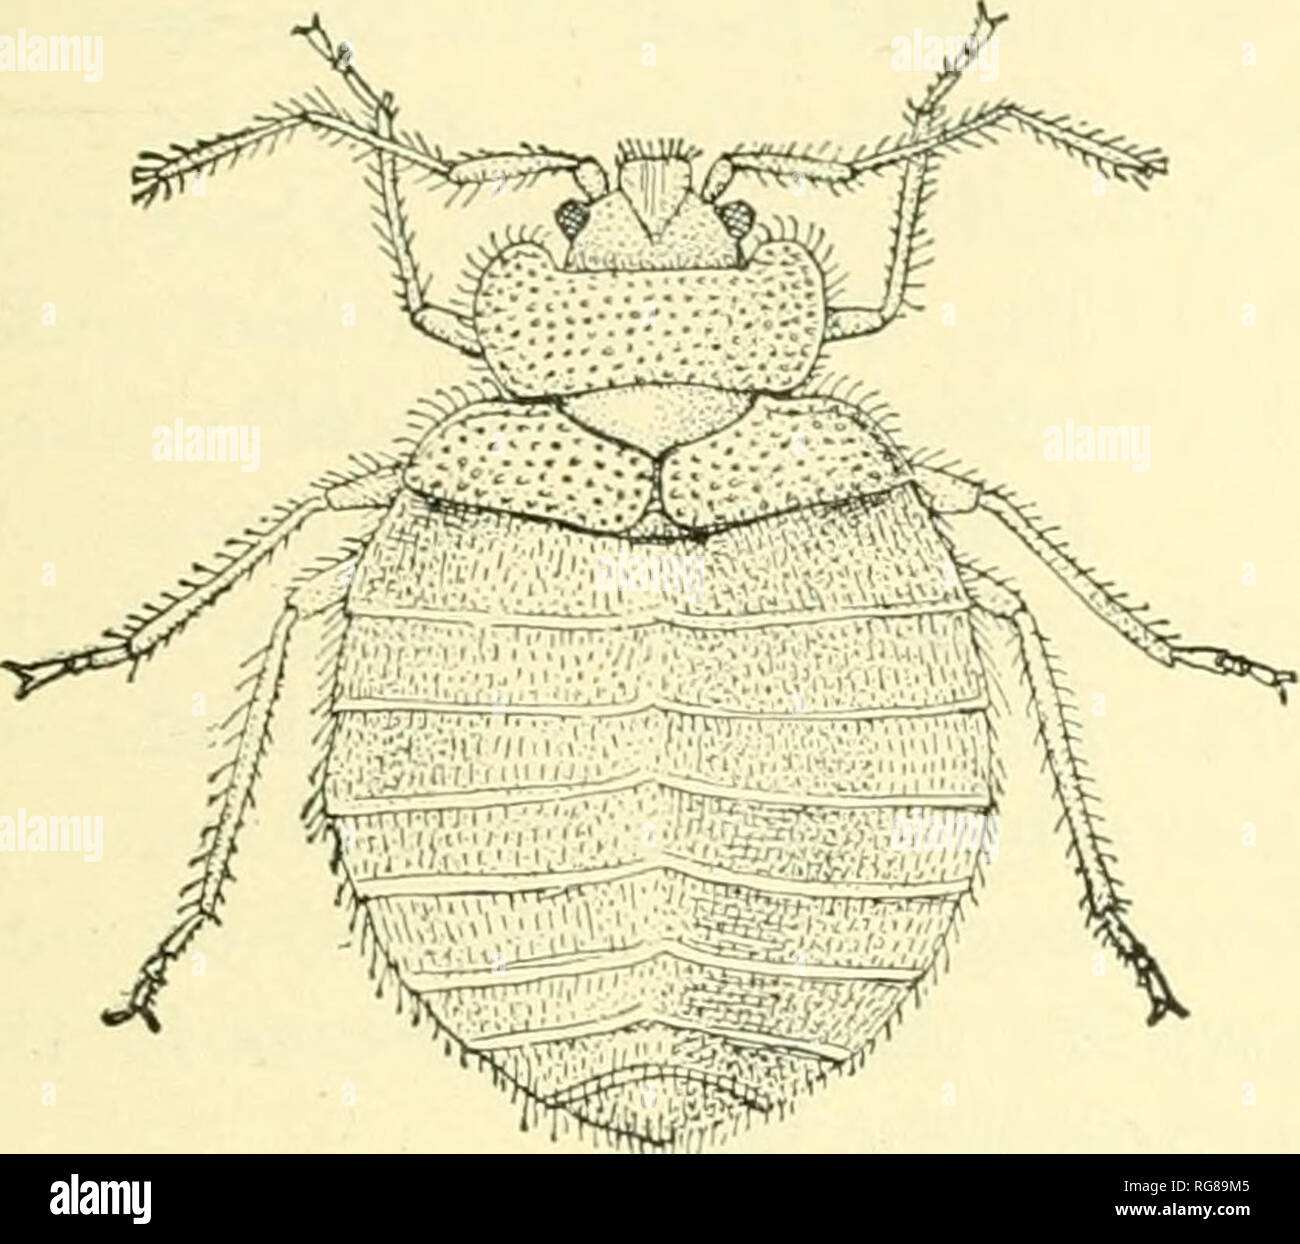 Boletín - Museo Nacional de los Estados Unidos. La ciencia. La recolección  y preservación de insectos de los bancos. 13 y de forma triangular. Muchas  de las especies pueden causar mucho